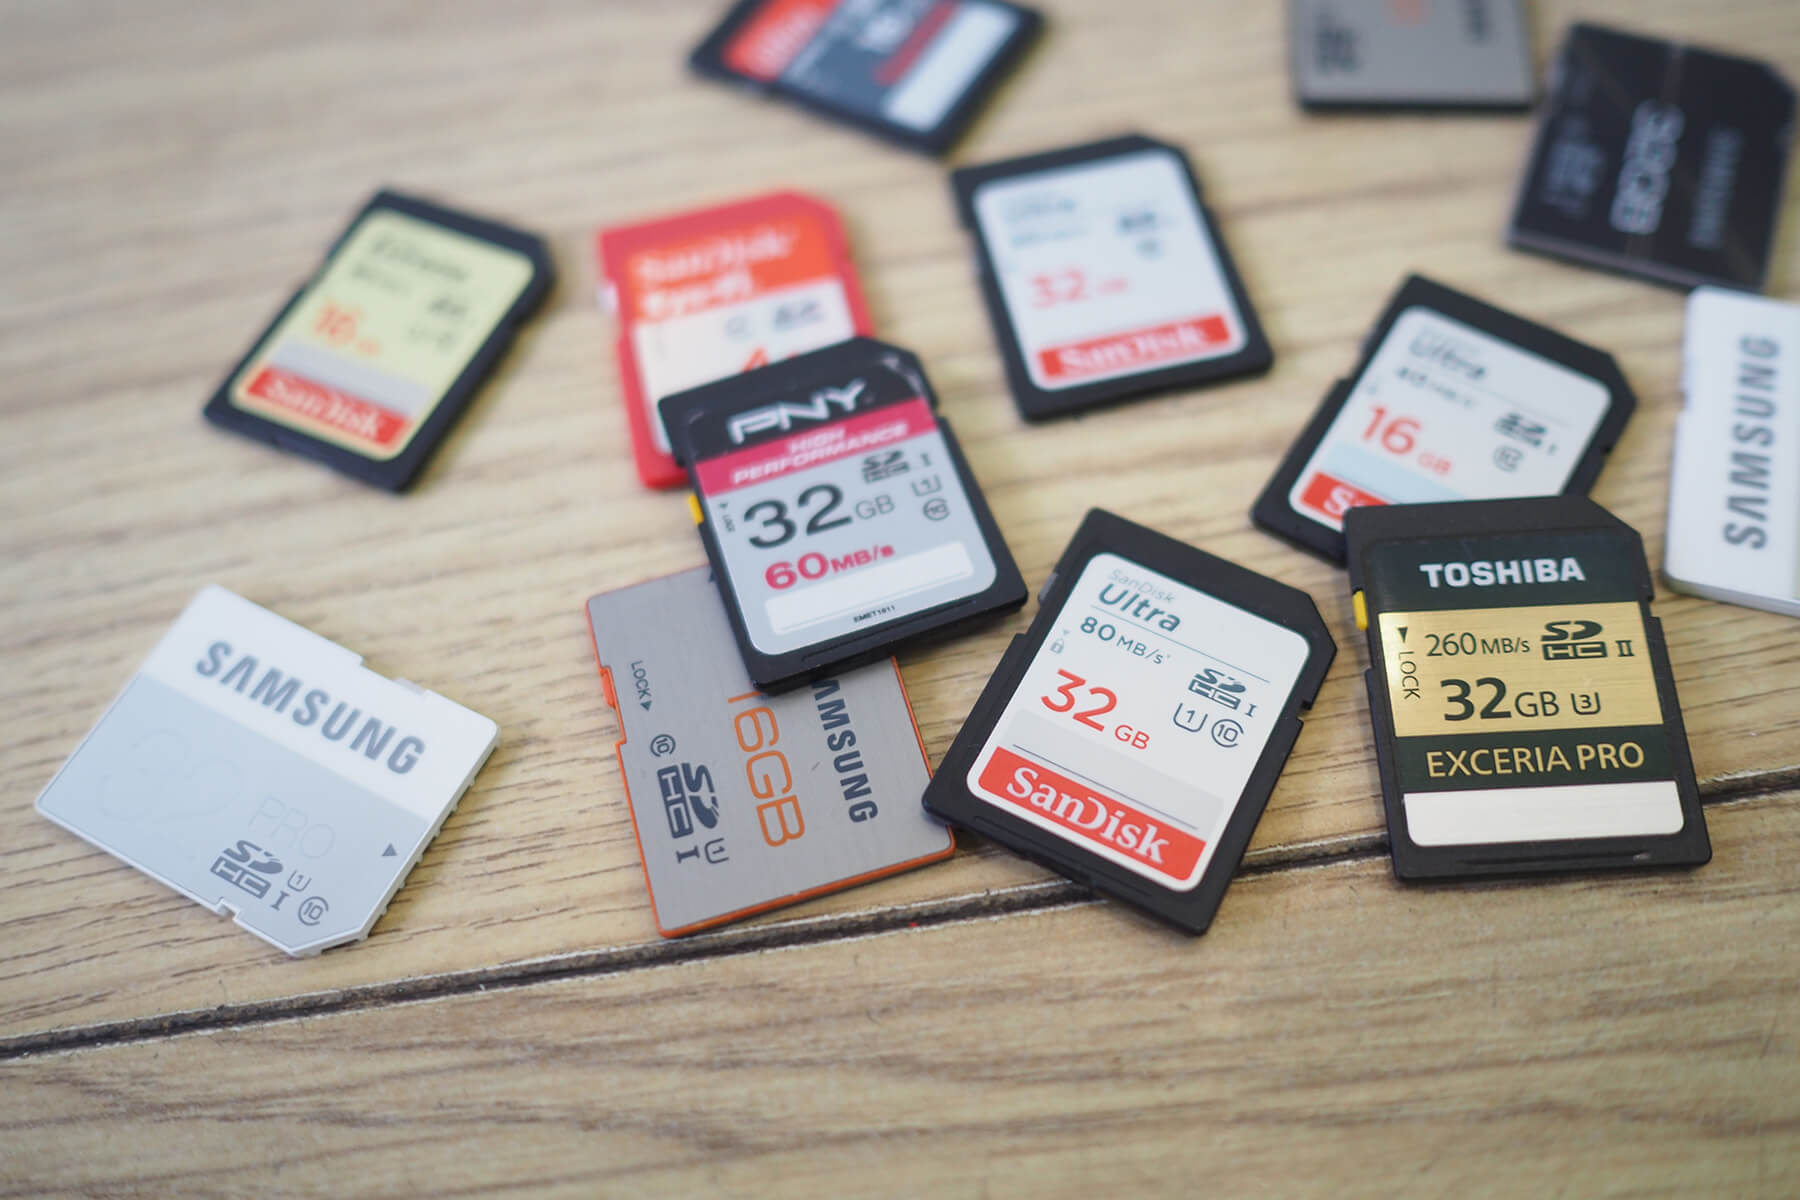 Camera memory cards